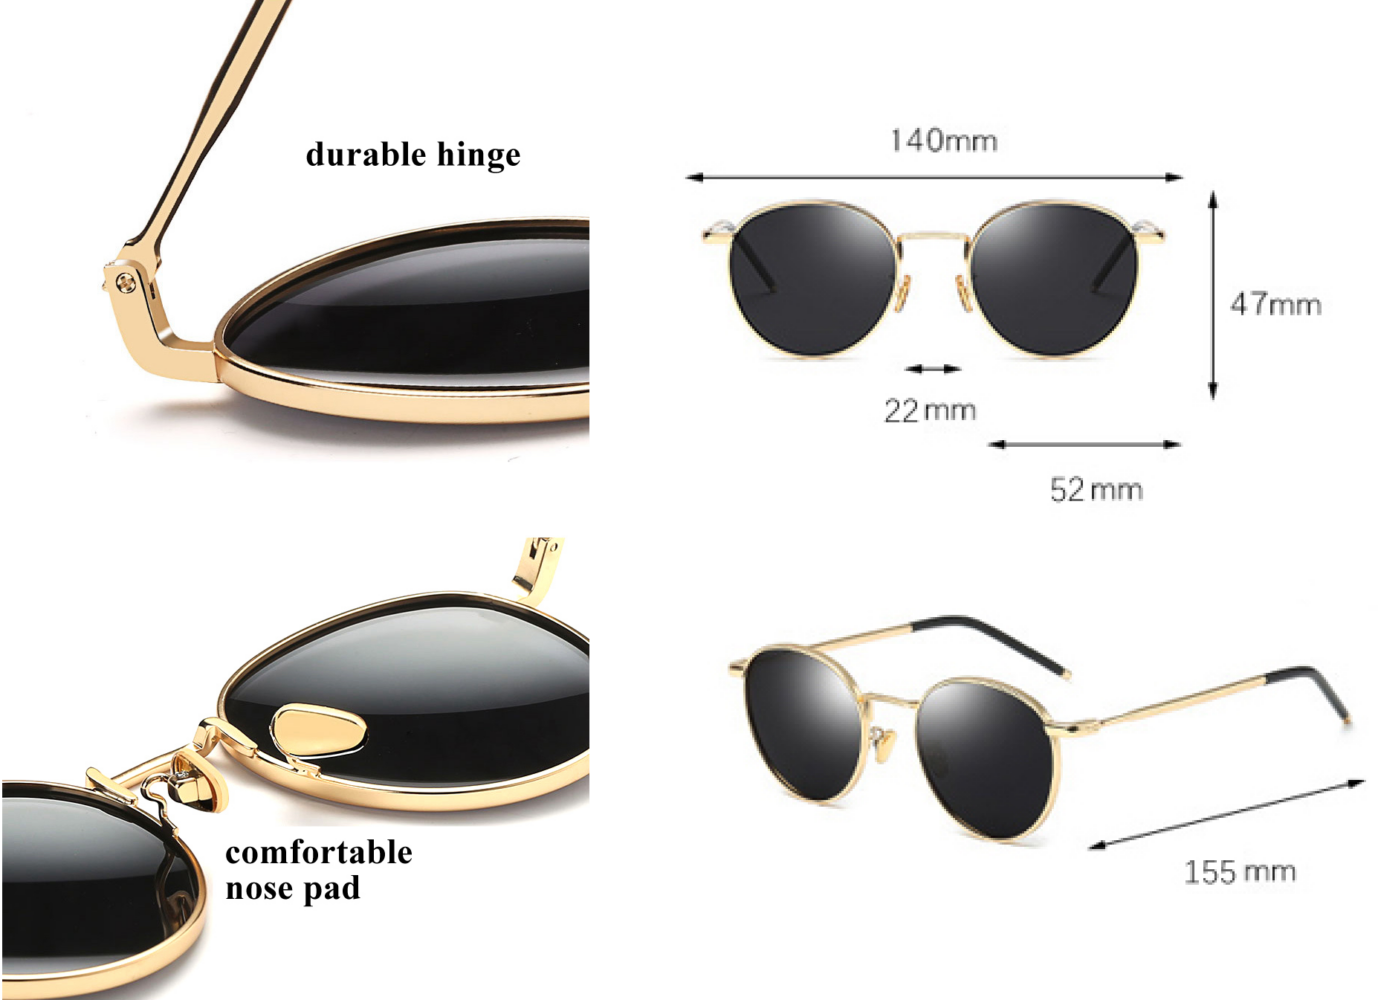 Dimensions of metal sunglasses